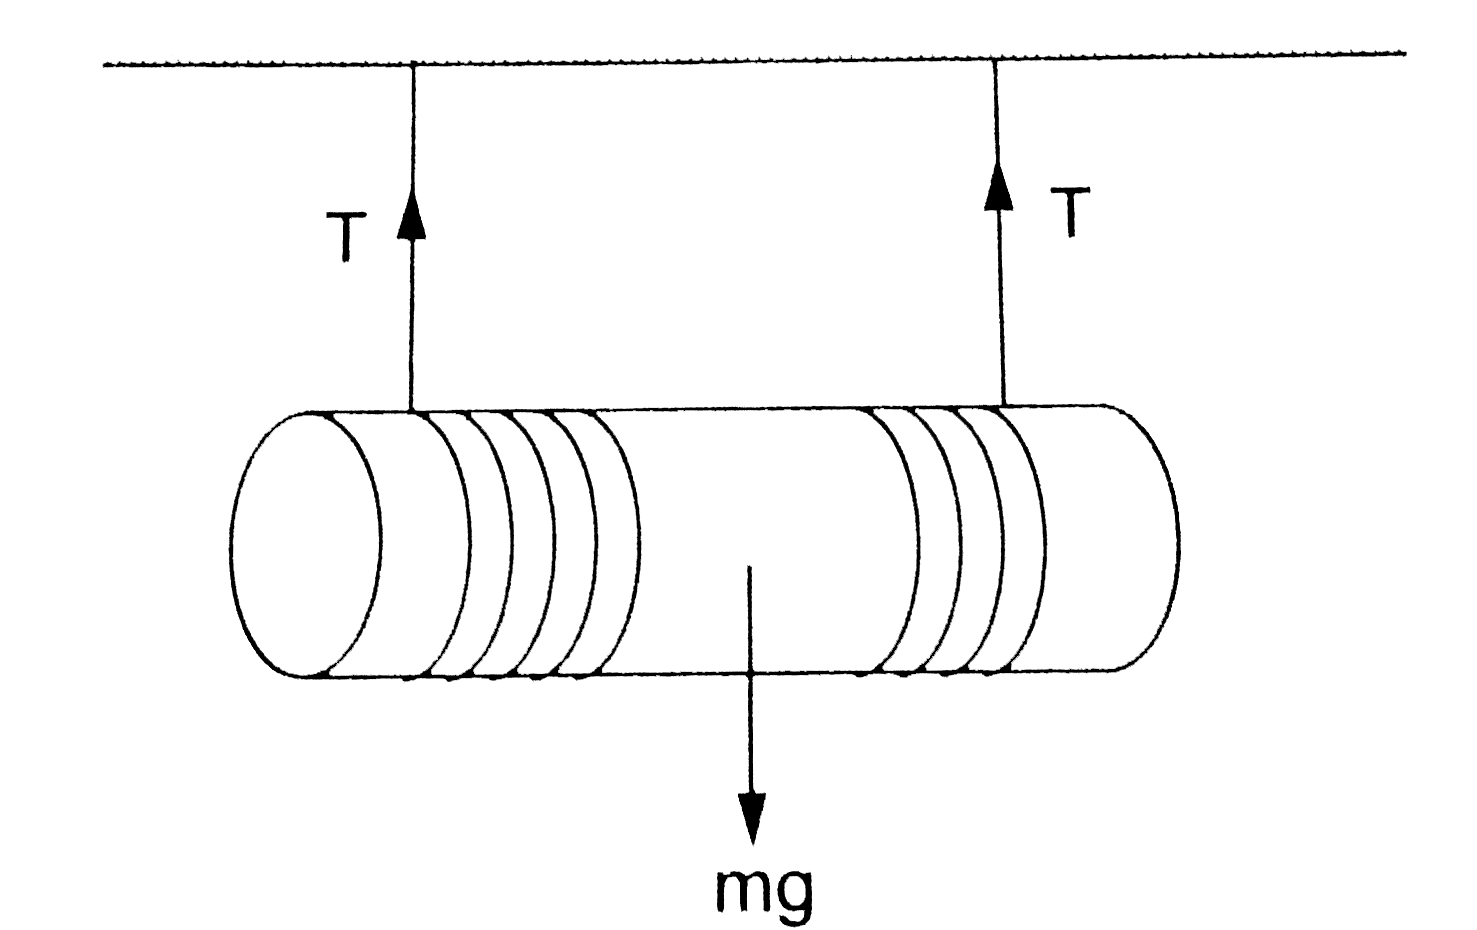 एक बेलन को सिरों के पास दो रस्सियों से लपेटकर एक छत से लटकाया गया है (चित्र 19.W5) । रस्सियाँ खुलती जाती है और बेलन नीचे आता है। जब बेलन h दुरी नीचे आ जाए, उस समय उसके केंद्र का वेग निकालें।